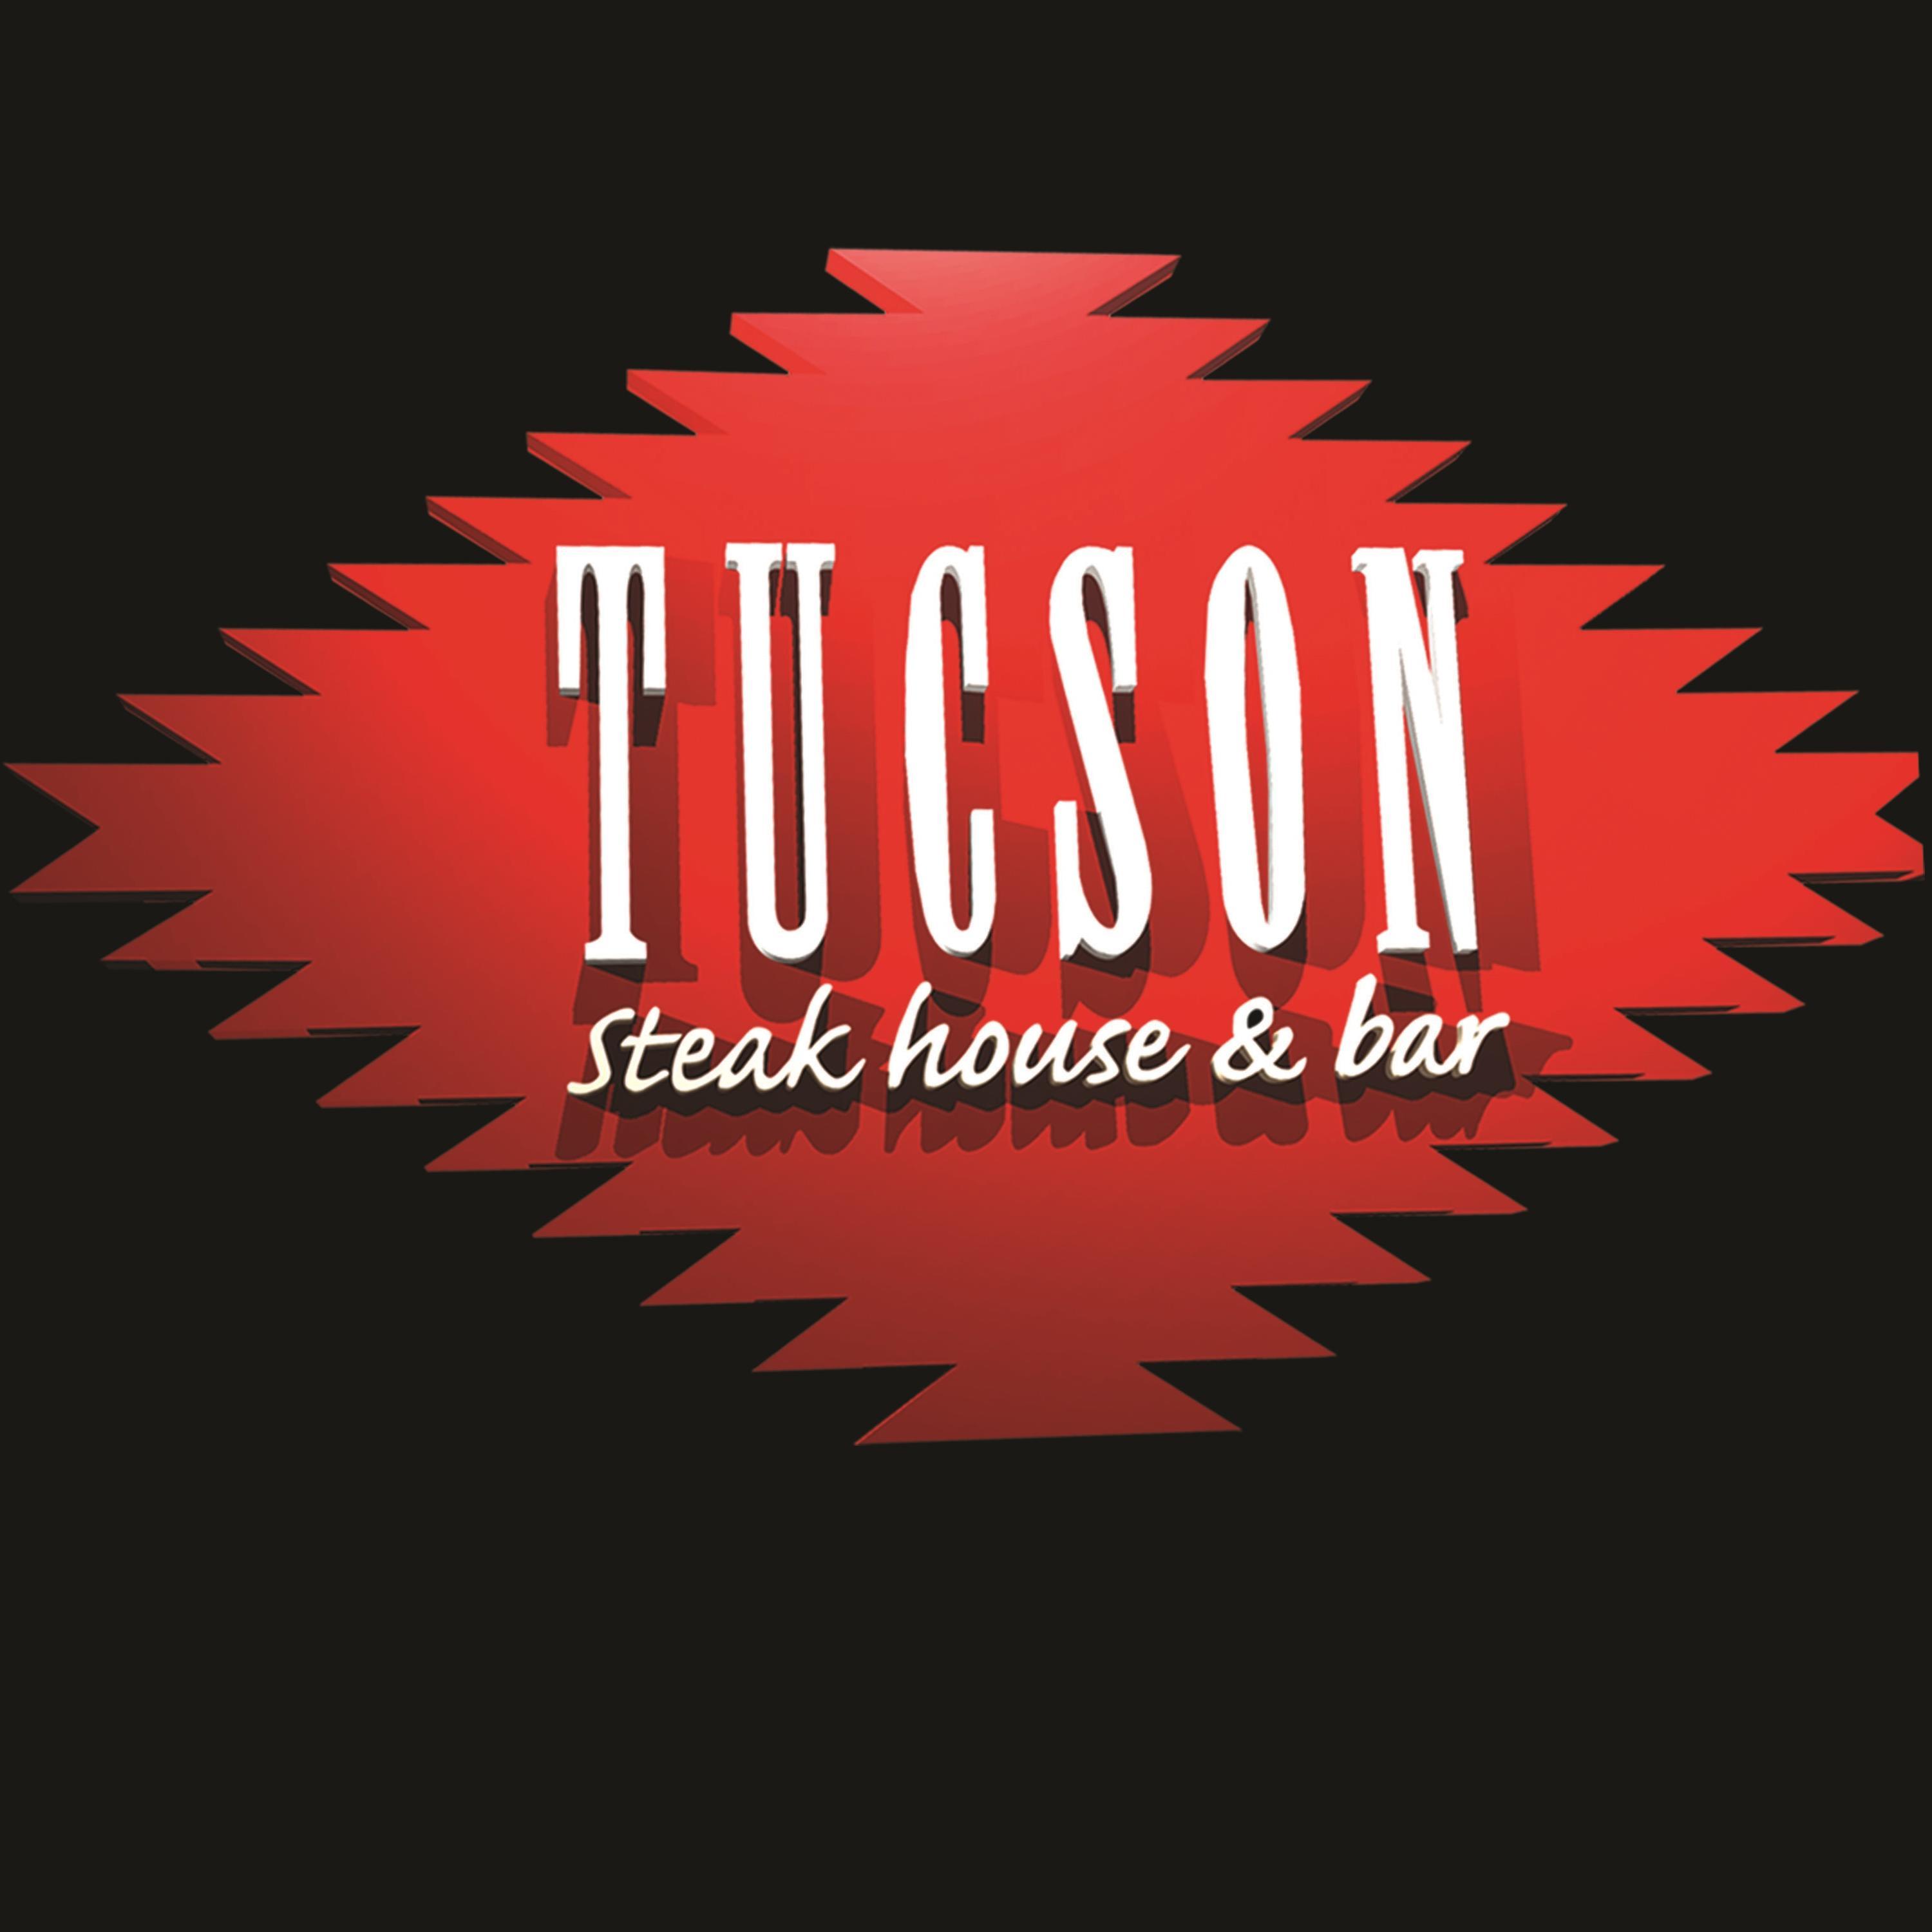 Tucson Steak House & Bar. Carnes importadas, bebidas refrescantes, promos especiales y el mejor ambiente de La Gran Vía. La experiencia que quiero.